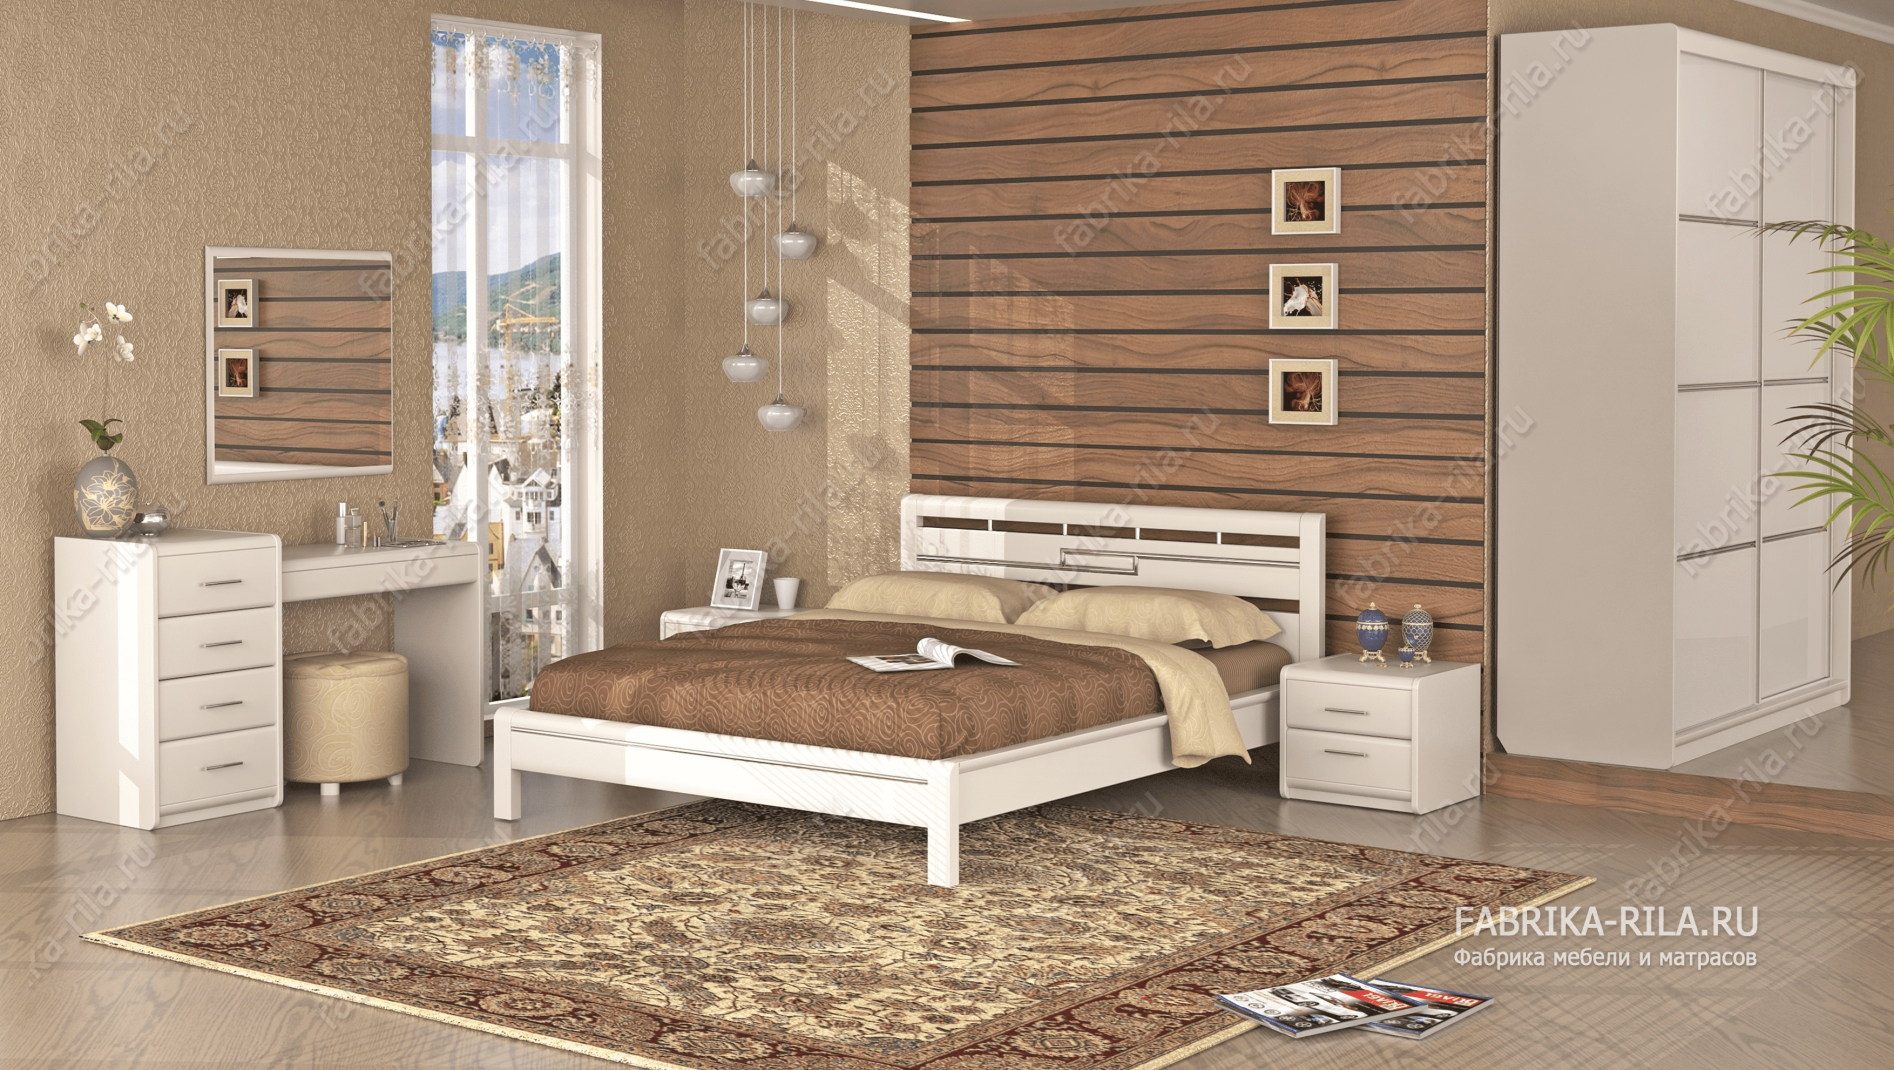 Кровать Okaeri 4 — 180x200 см. из сосны